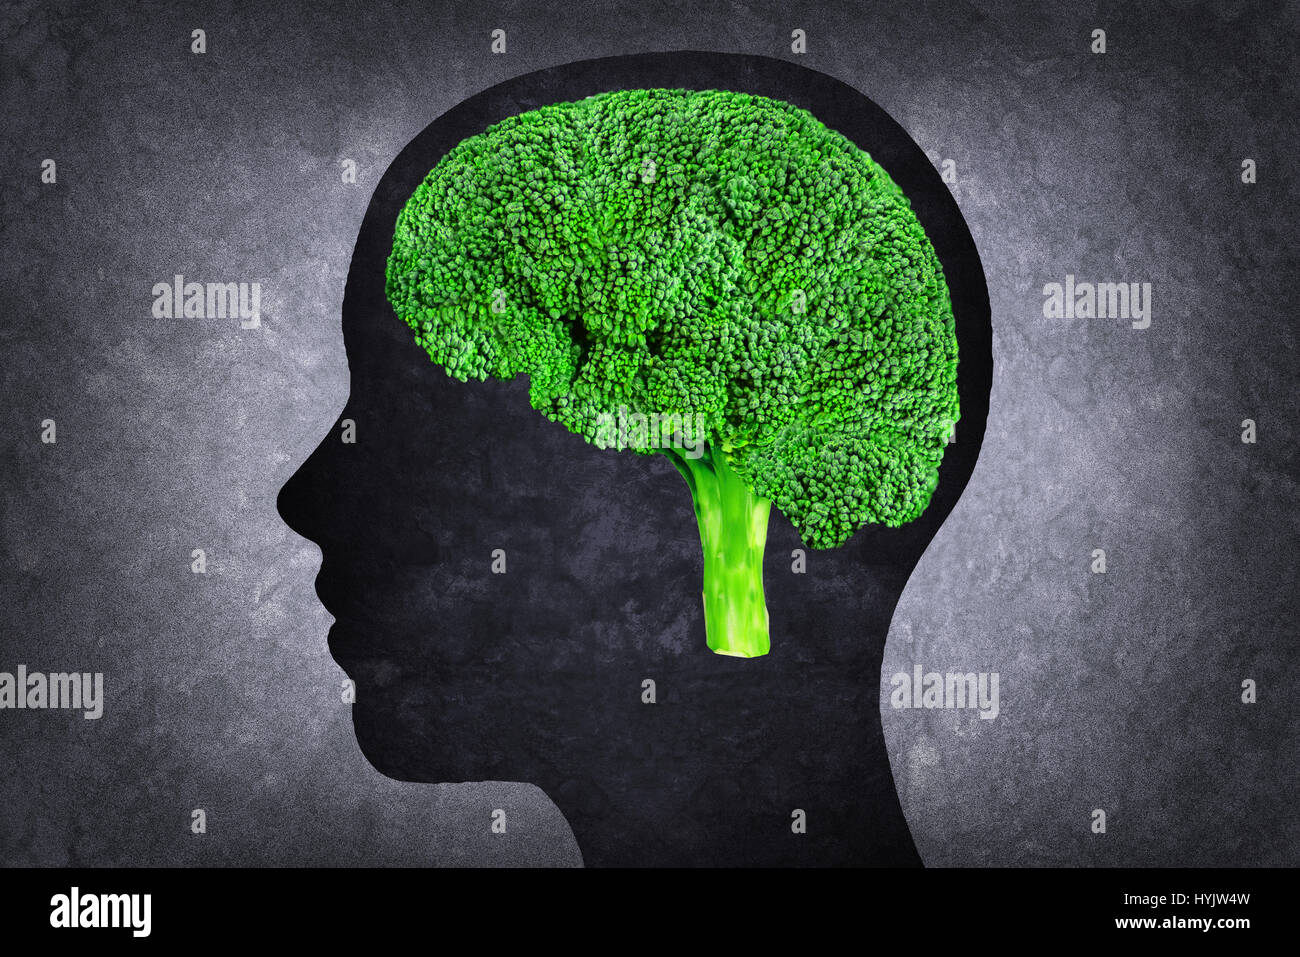 Illustration de tête humaine avec cerveau plutôt que le brocoli Banque D'Images